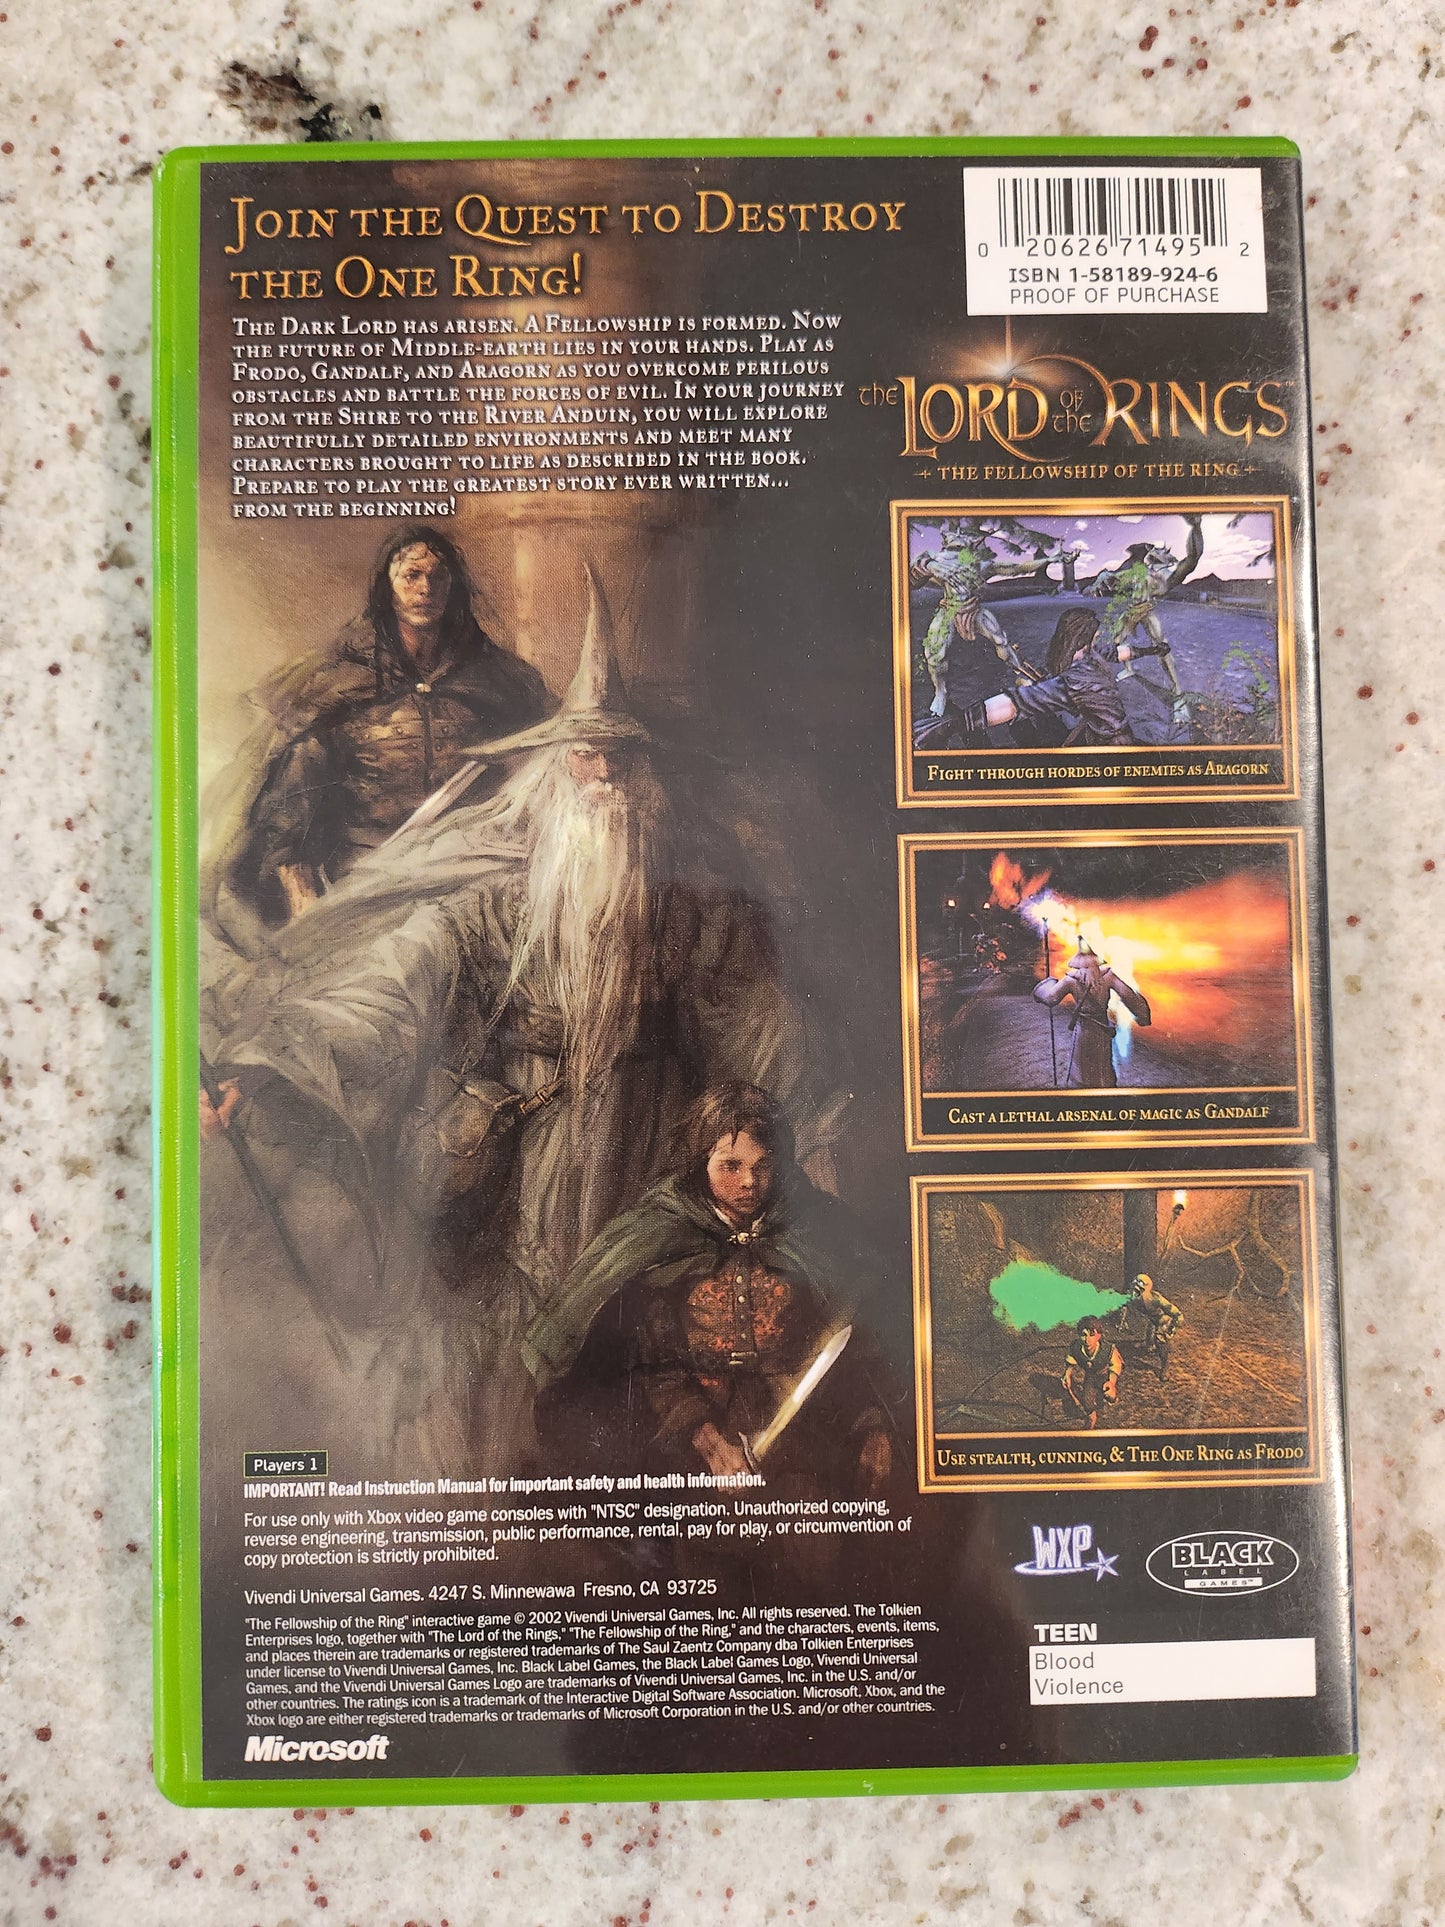 Le Seigneur des Anneaux La Communauté de l'anneau Xbox Original 